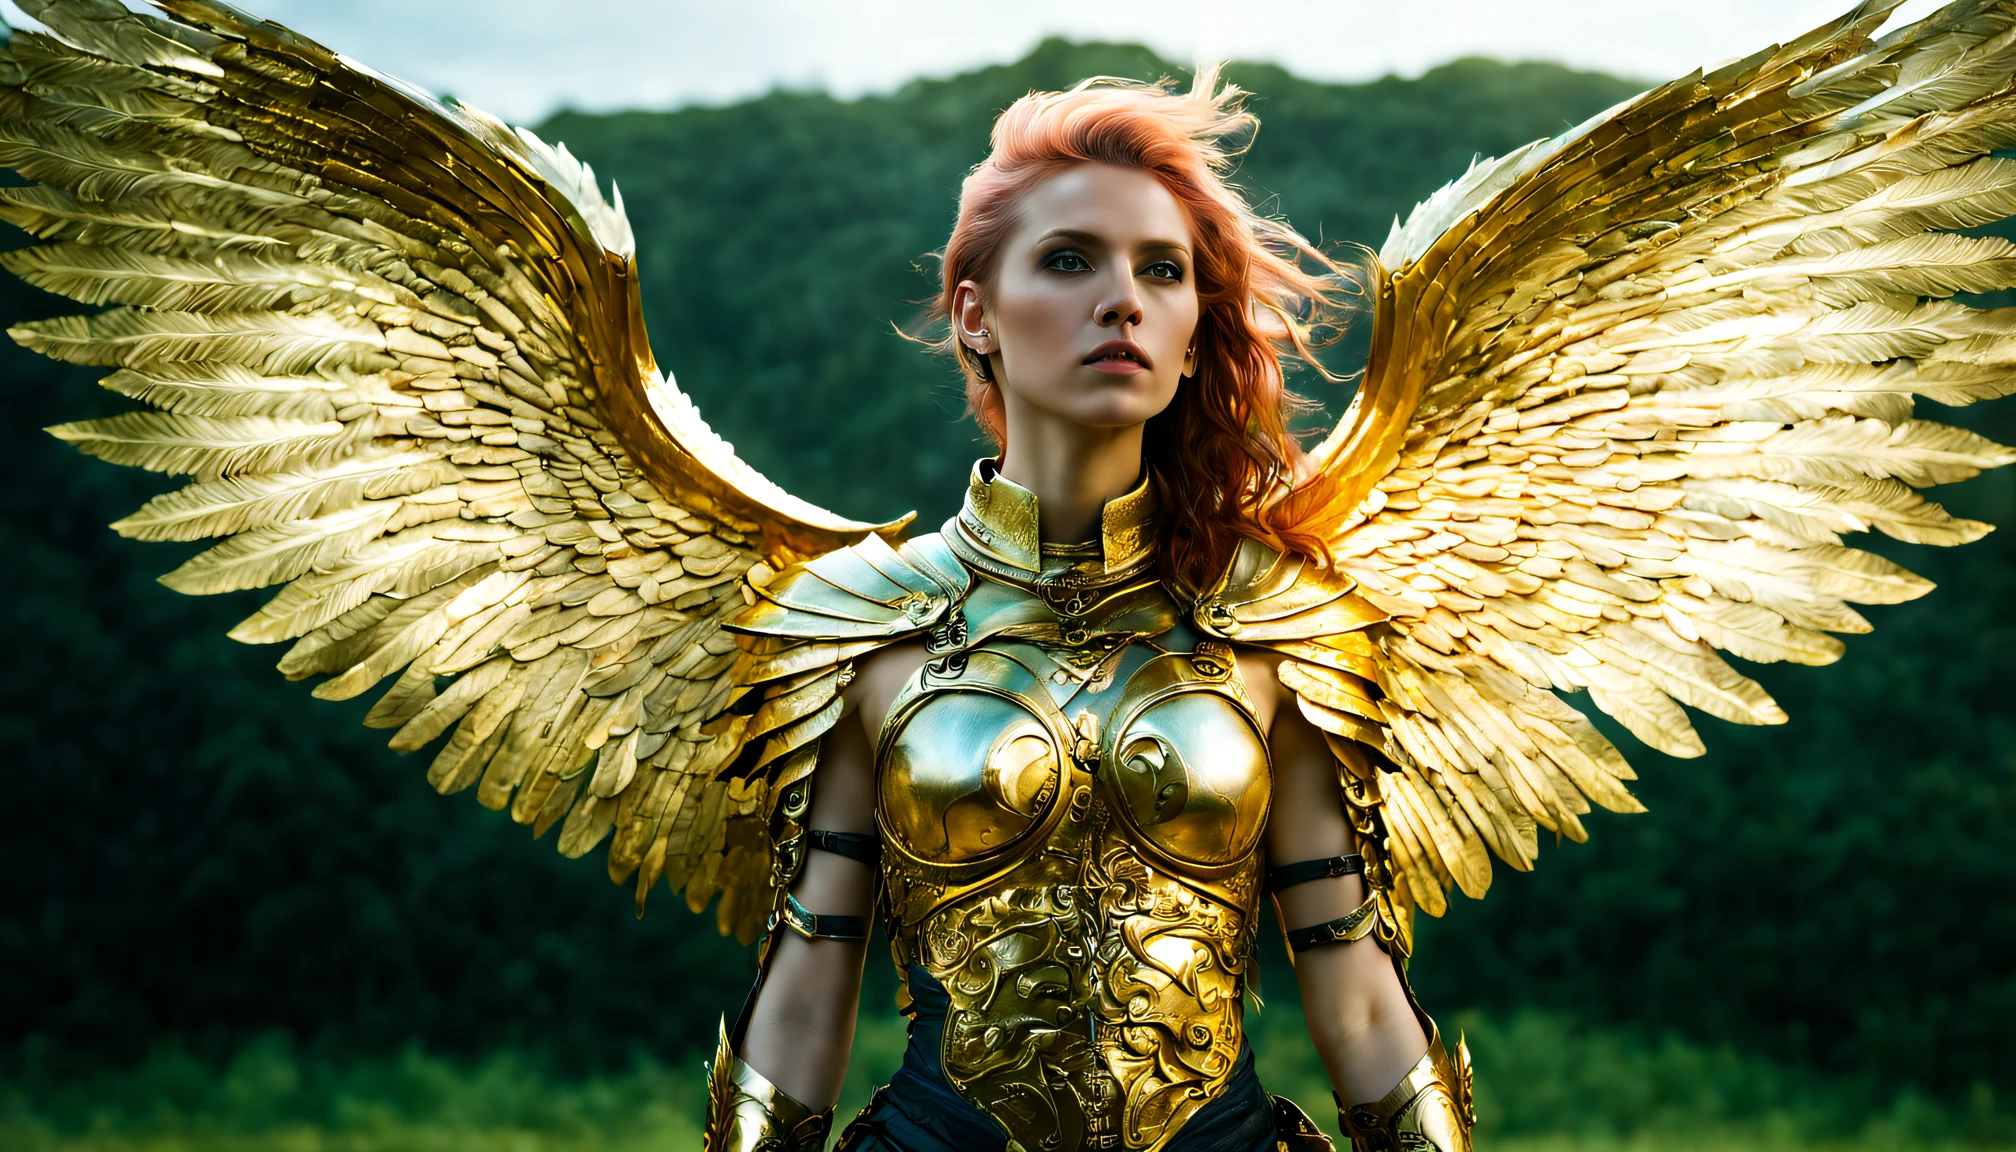 (广角),(以太朋克风格:1.4),8千 , 超高品质 ,自然, 异教意象, intricate 详细的, 美丽的女武神 ,gold 详细的 holy gorgeous armor, intricate 详细的 wide angelic wings on her back,张开天使的翅膀,乌托邦,魔法,详细的,法师,户外,令人惊叹的风景,(highly 详细的:1.2),(超现实主义:1.2), 实际的, 详细的, 有纹理的, 皮肤, 铂白色头发, 绿眼睛, 作者：Alex Huguet, 迈克·希尔, 伊恩·斯普里格斯, 朴在哲, 马雷克·丹科 ,细节大师2,更多细节 XL,(半身像)